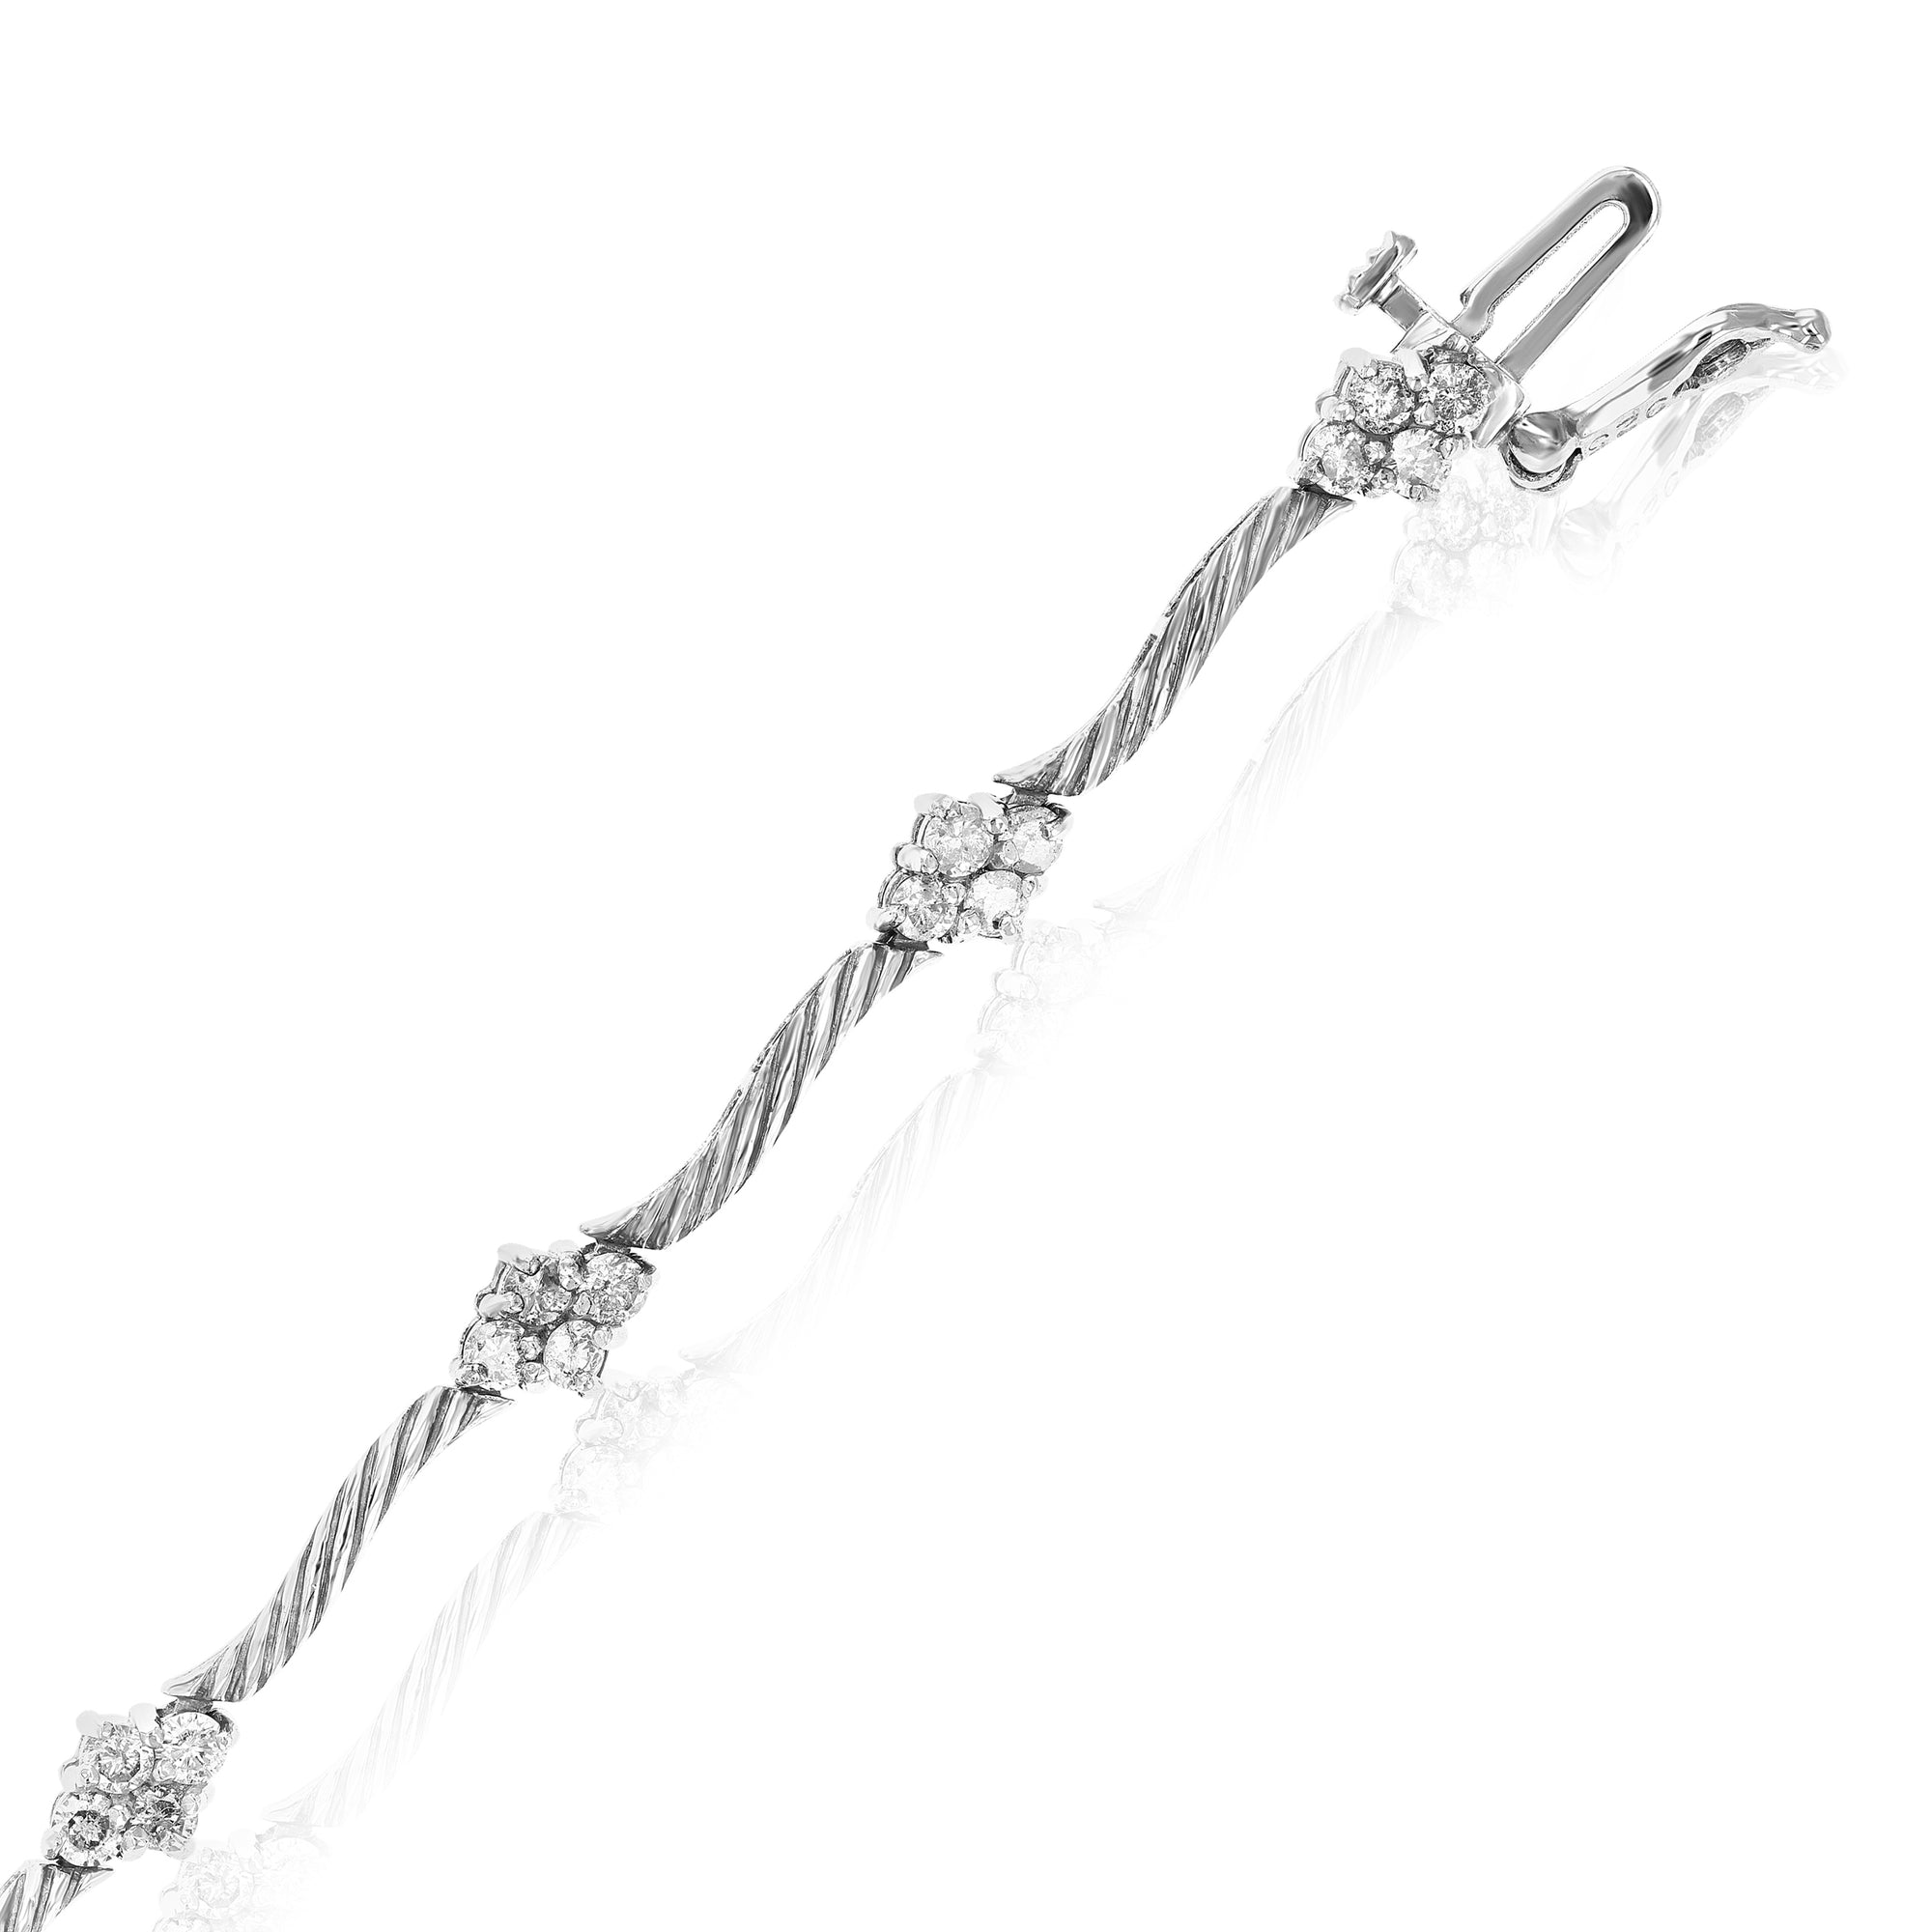 1.20 cttw Diamond Bracelet in Sterling Silver